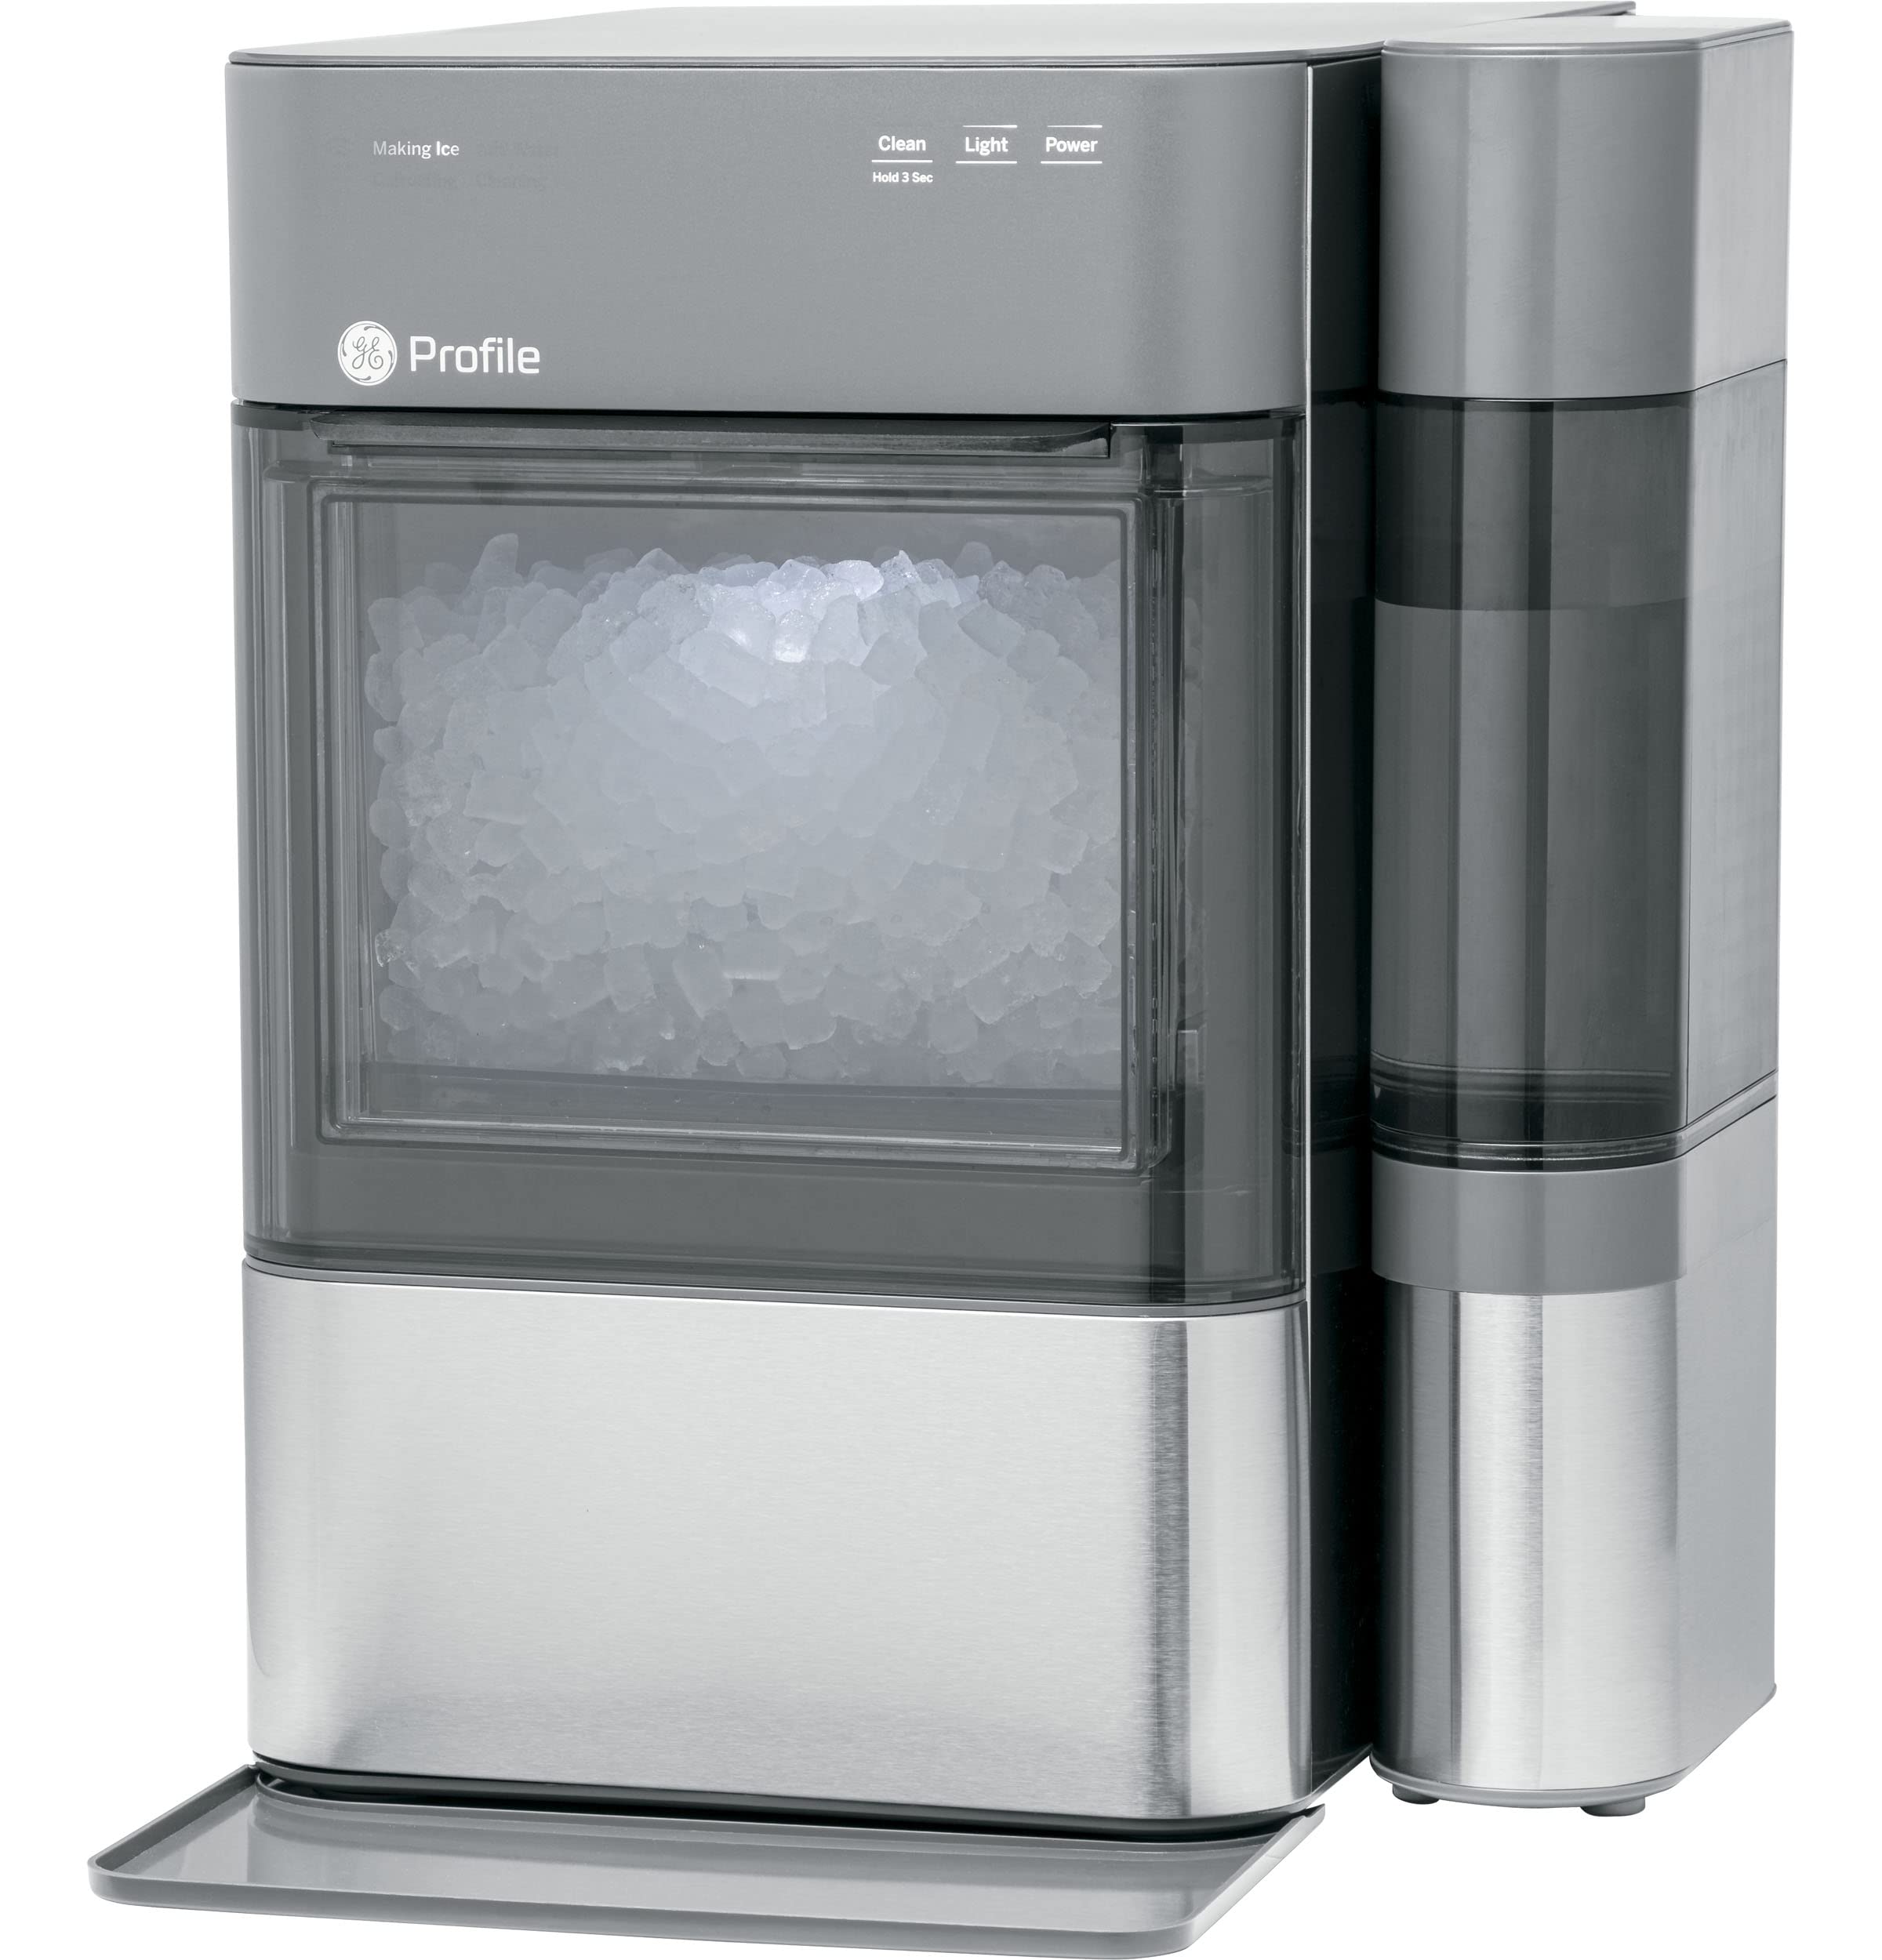 GE Opale 2.0 | Machine à glaçons de comptoir avec réservoir latéral | Machine à glace avec connectivité WiFi | Essentiels de la cuisine pour la maison intellinte | Acier inoxydable